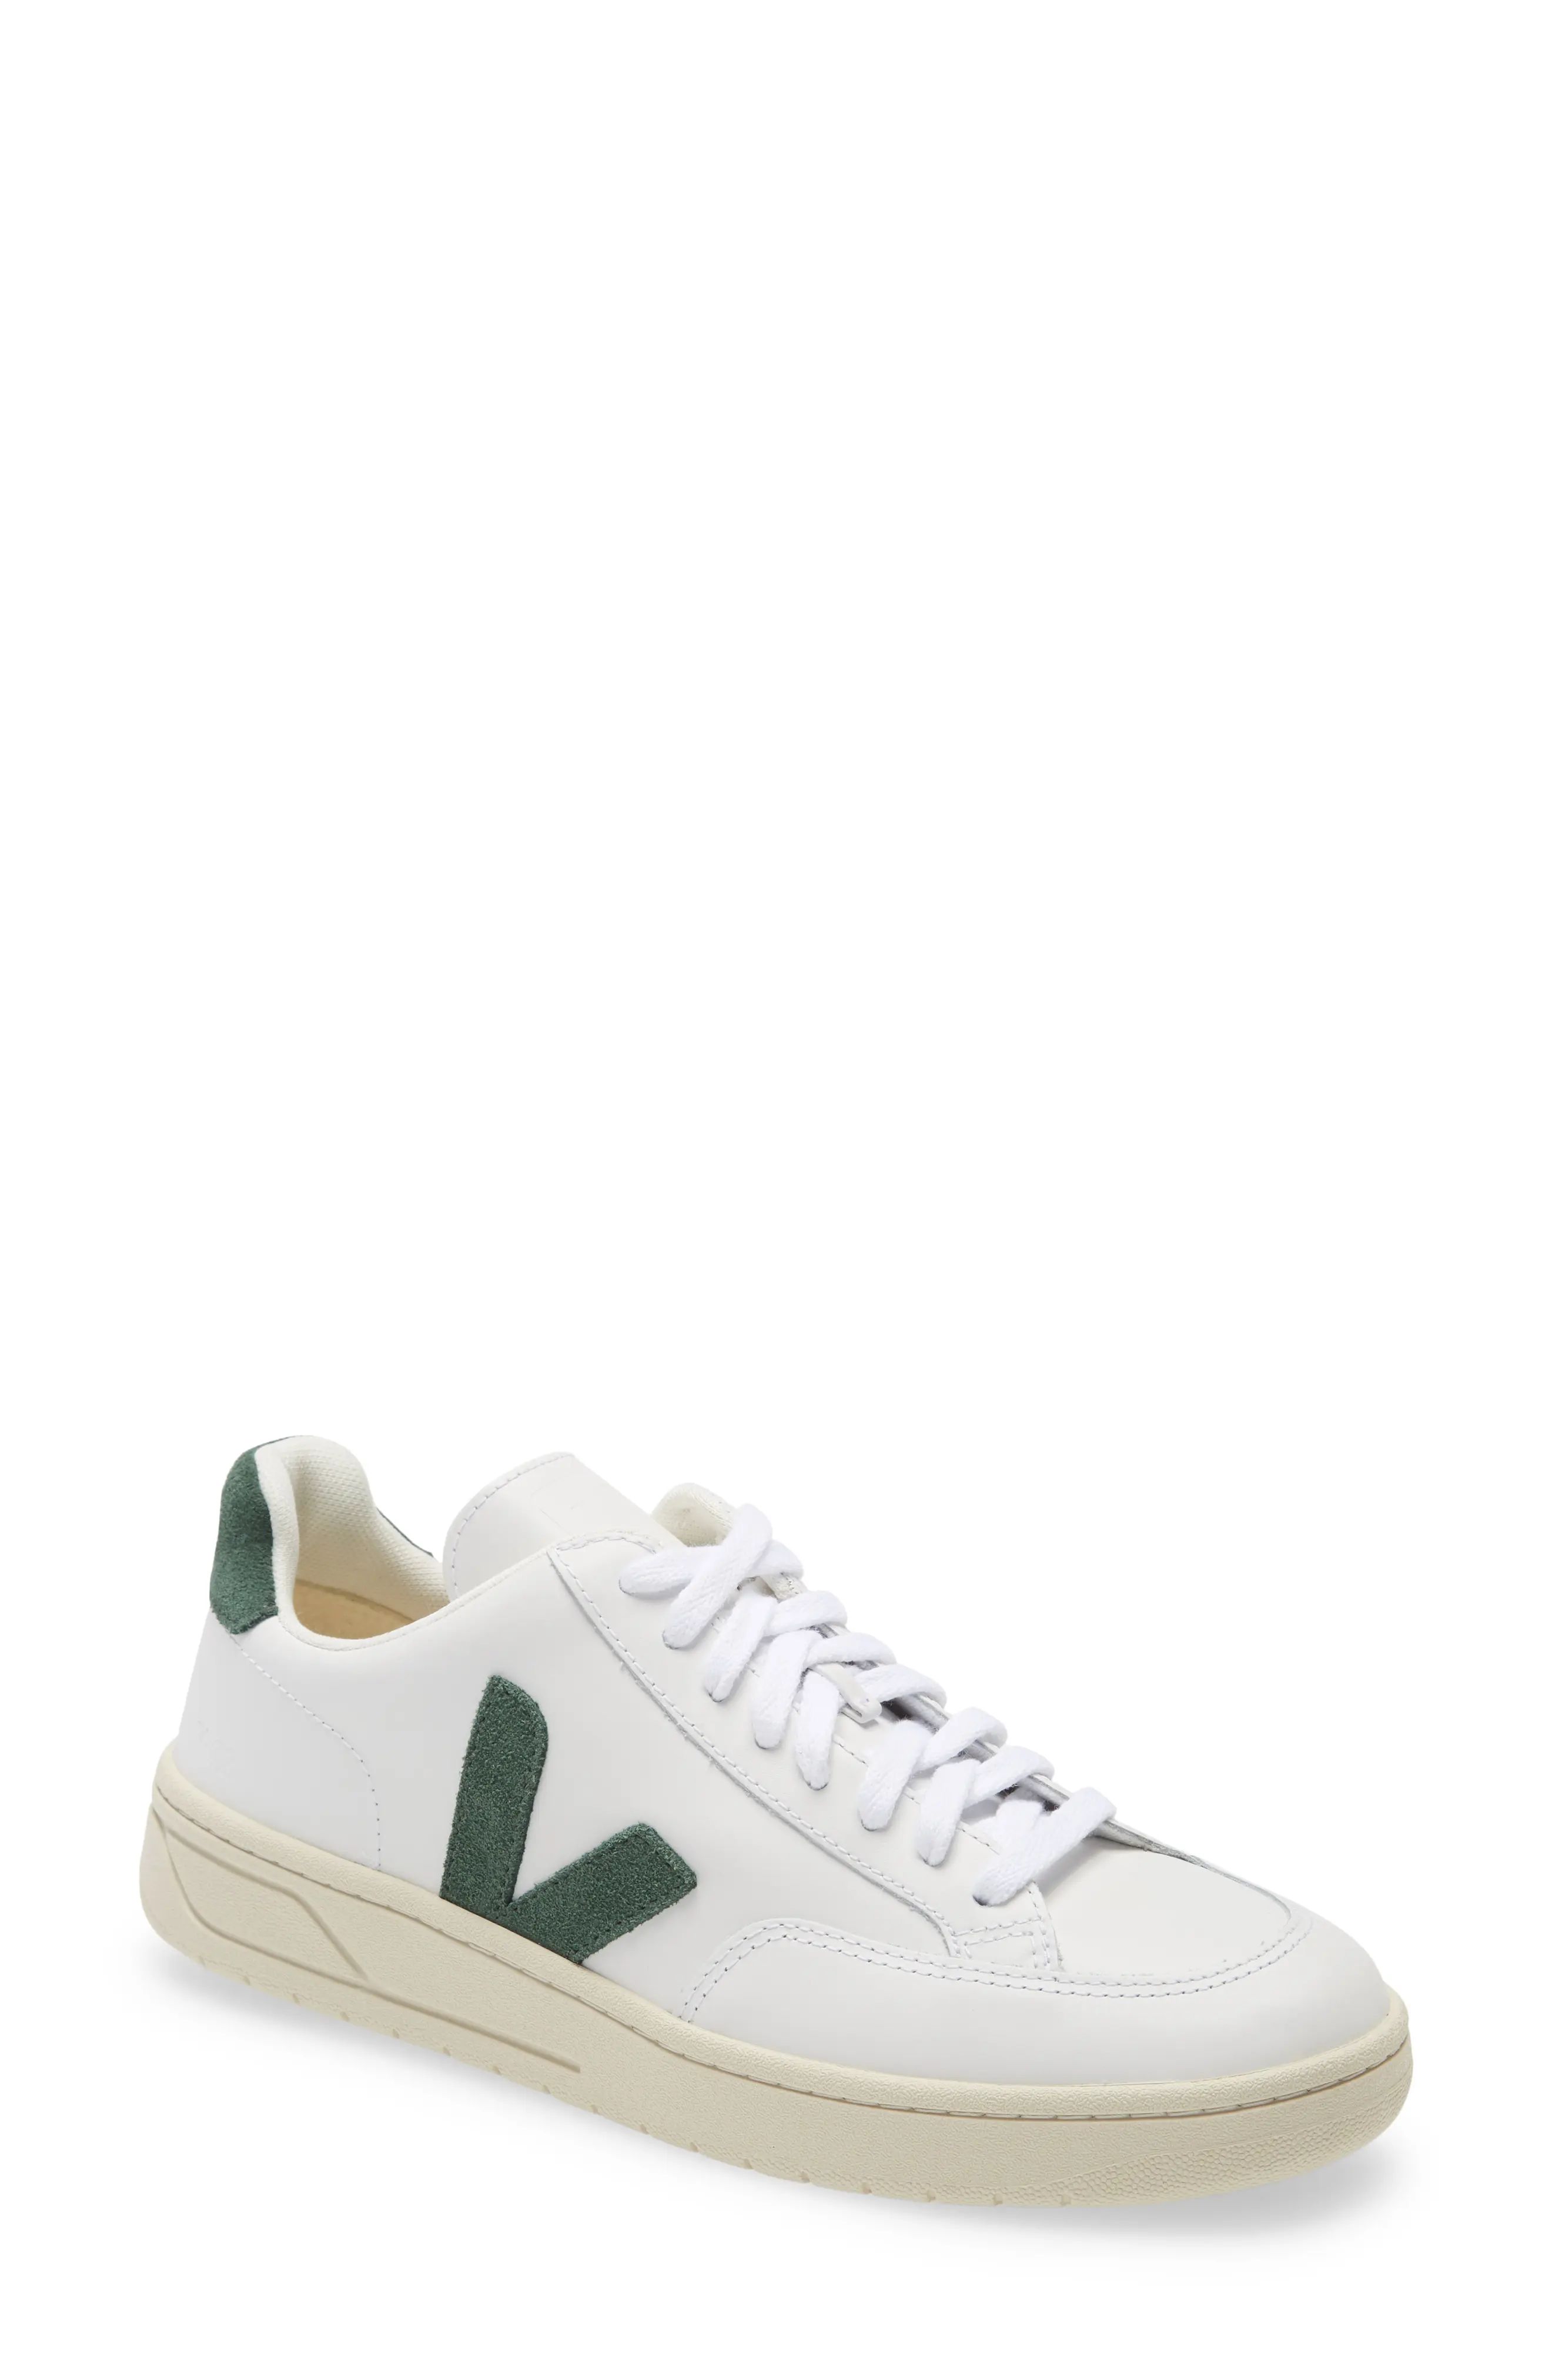 Veja V-12 Sneaker, Size 44EU - White | Nordstrom